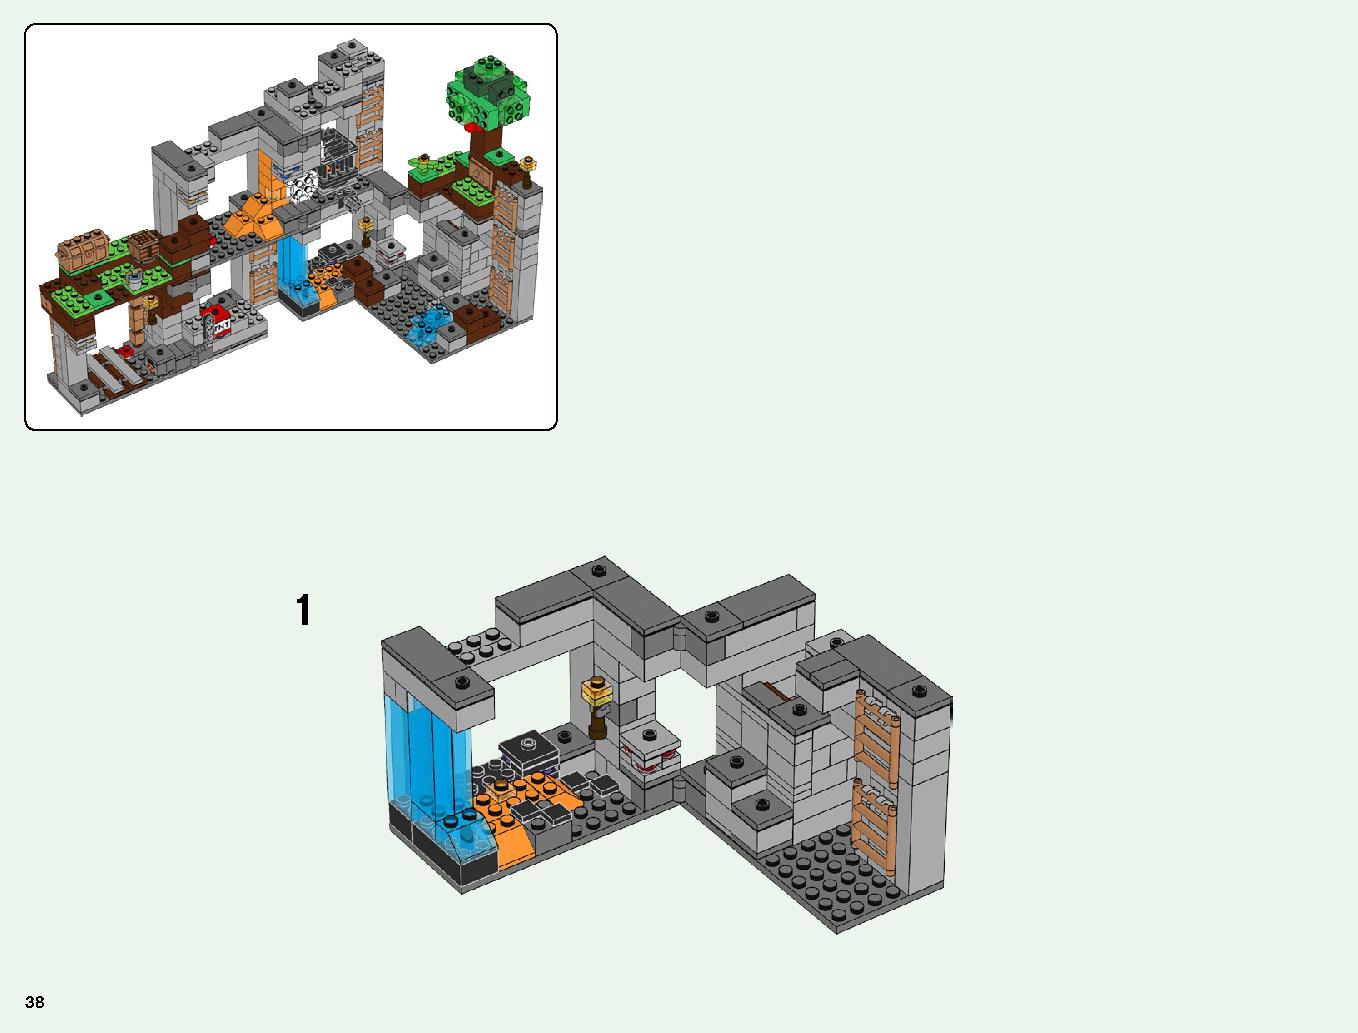 ベッドロックの冒険 21147 レゴの商品情報 レゴの説明書・組立方法 38 page